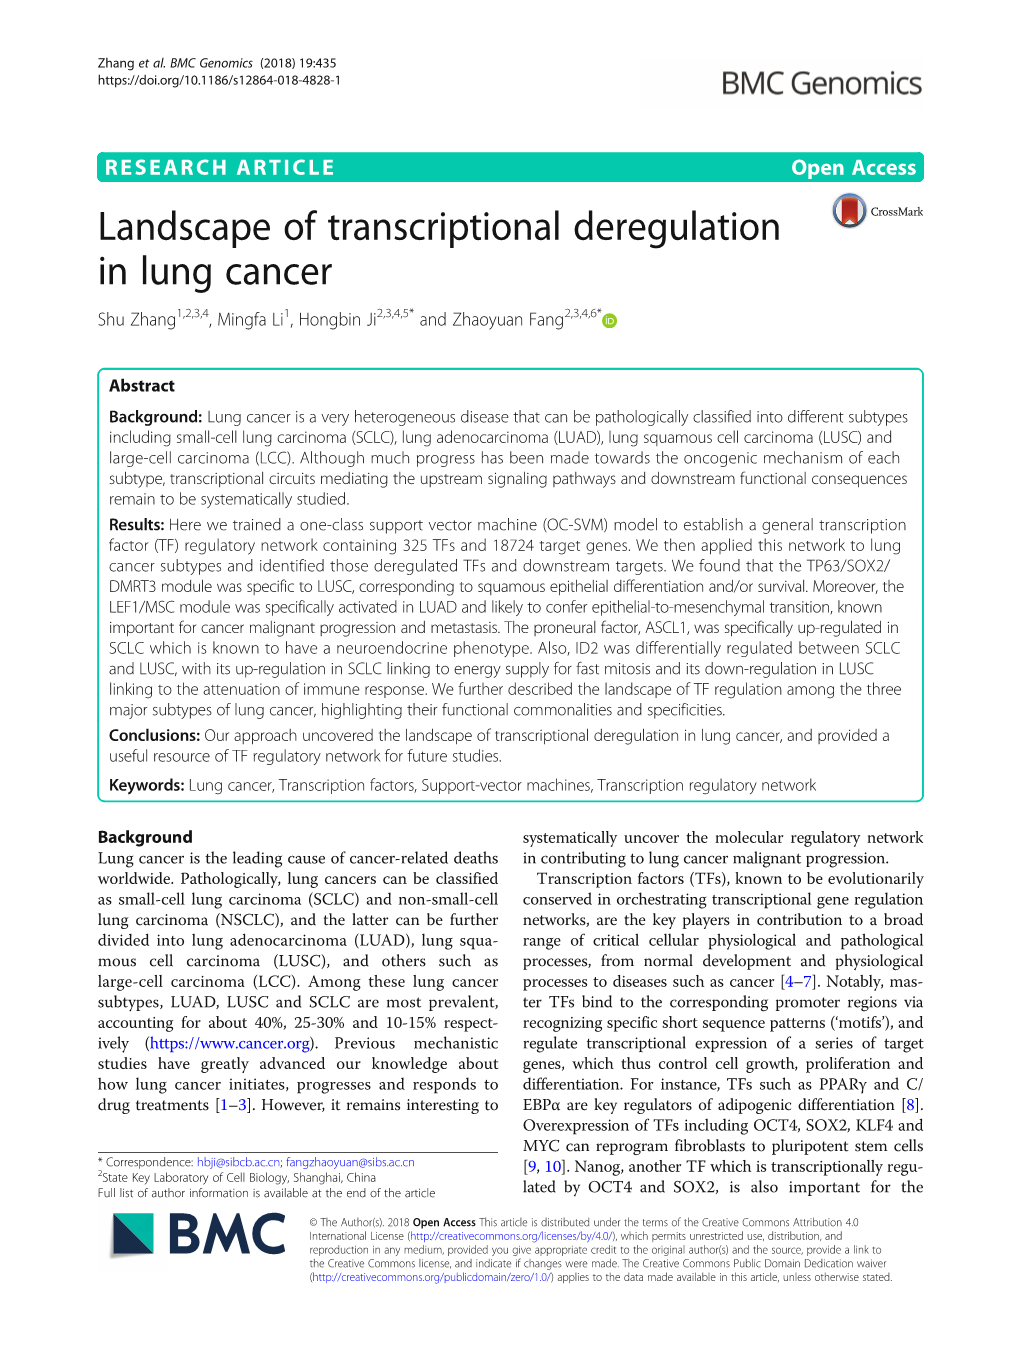 Landscape of Transcriptional Deregulation in Lung Cancer Shu Zhang1,2,3,4, Mingfa Li1, Hongbin Ji2,3,4,5* and Zhaoyuan Fang2,3,4,6*